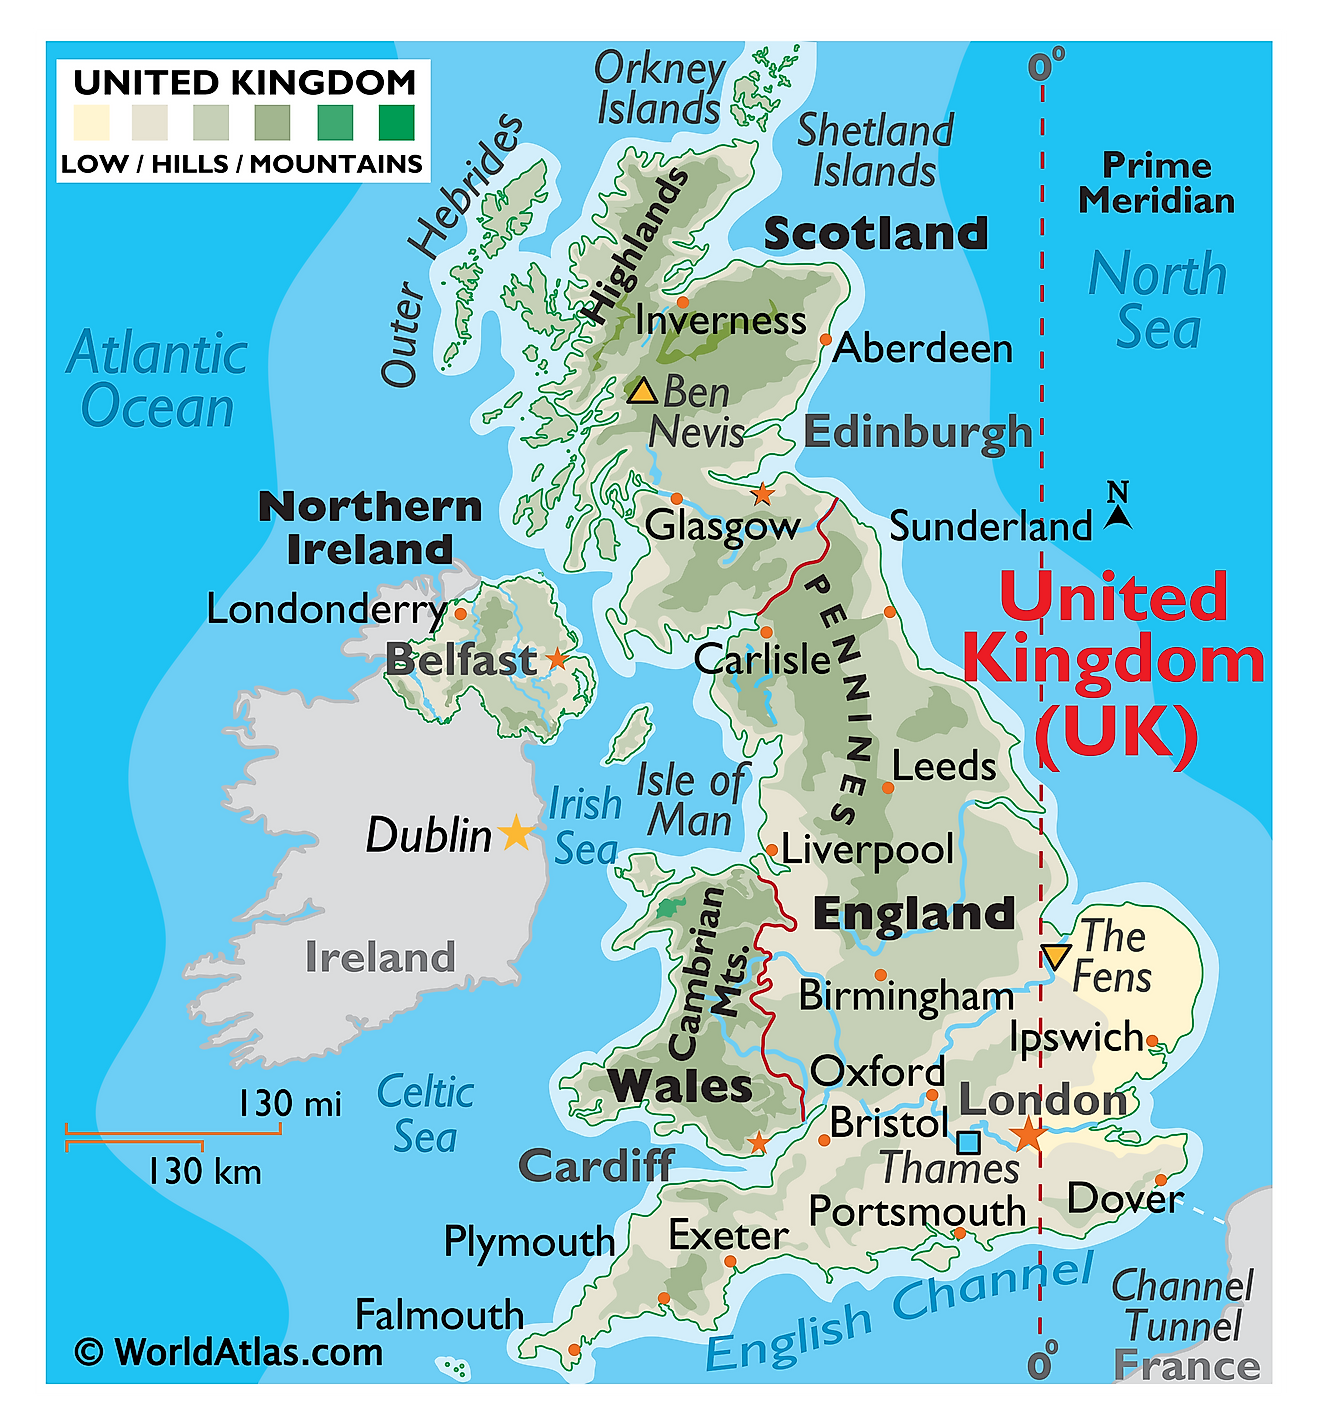 Mapa físico del Reino Unido que muestra el terreno, cadenas montañosas importantes, ríos, asentamientos, islas, etc.